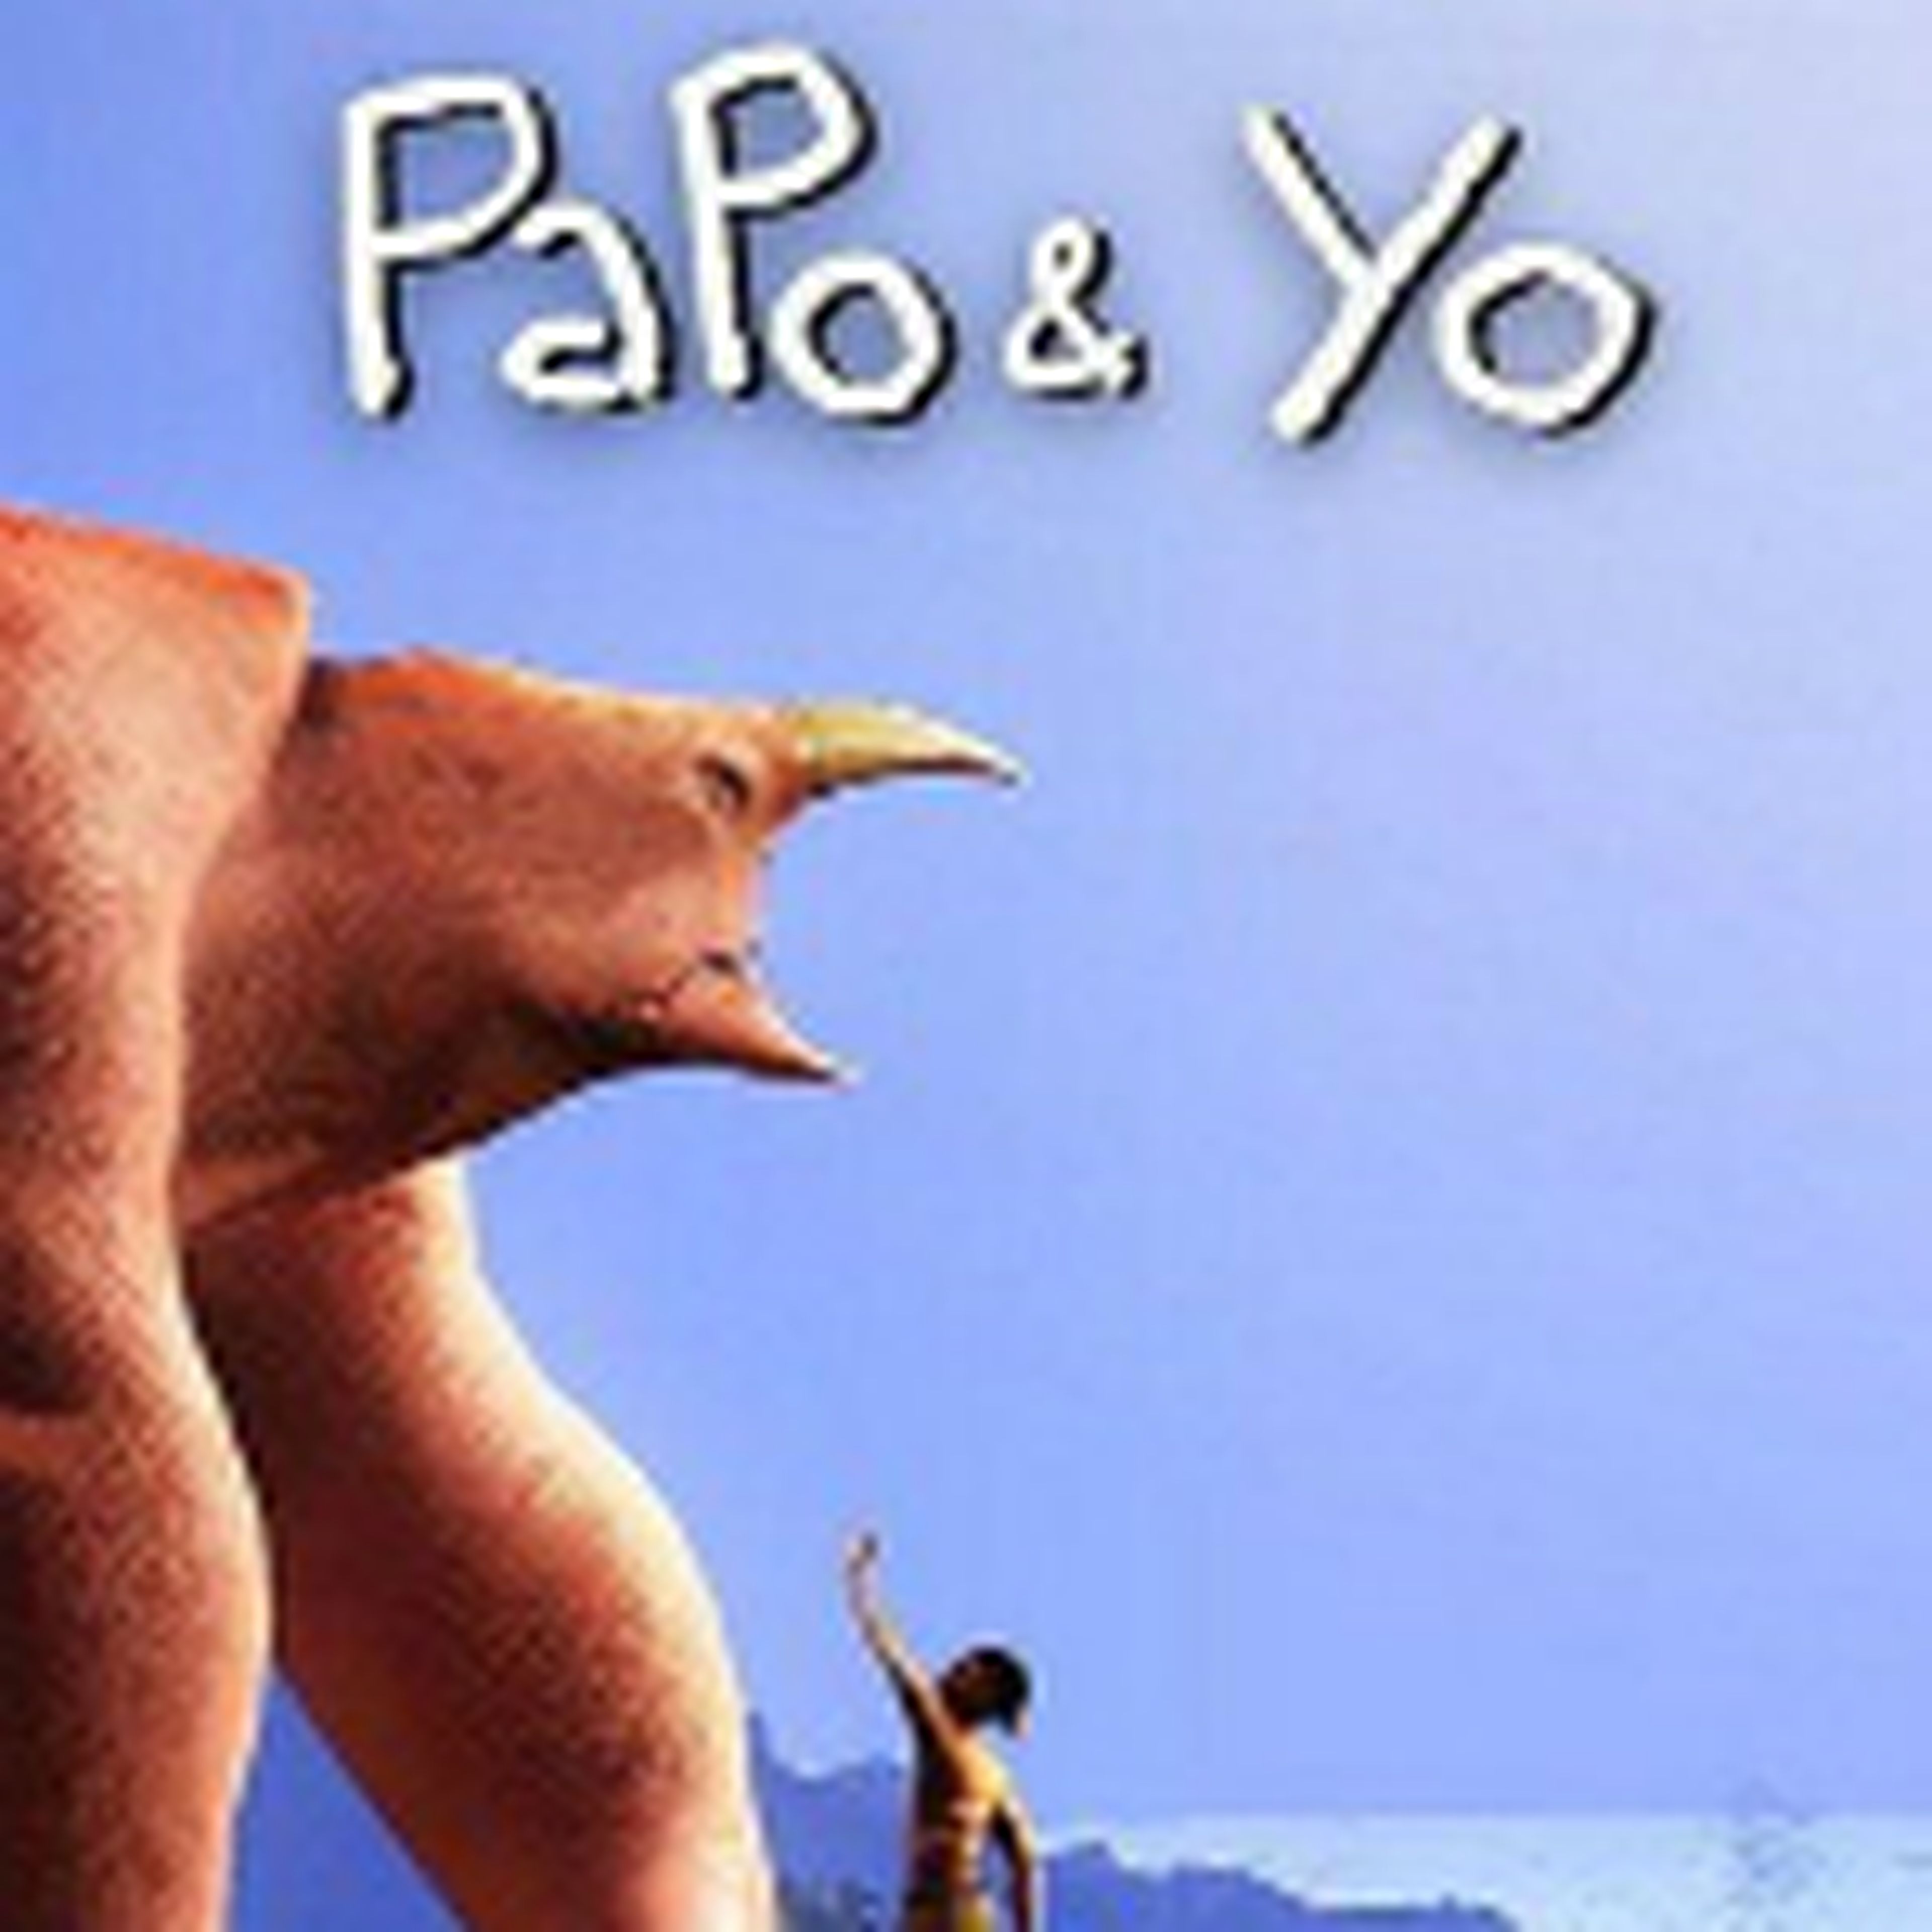 Papo & Yo para PS3